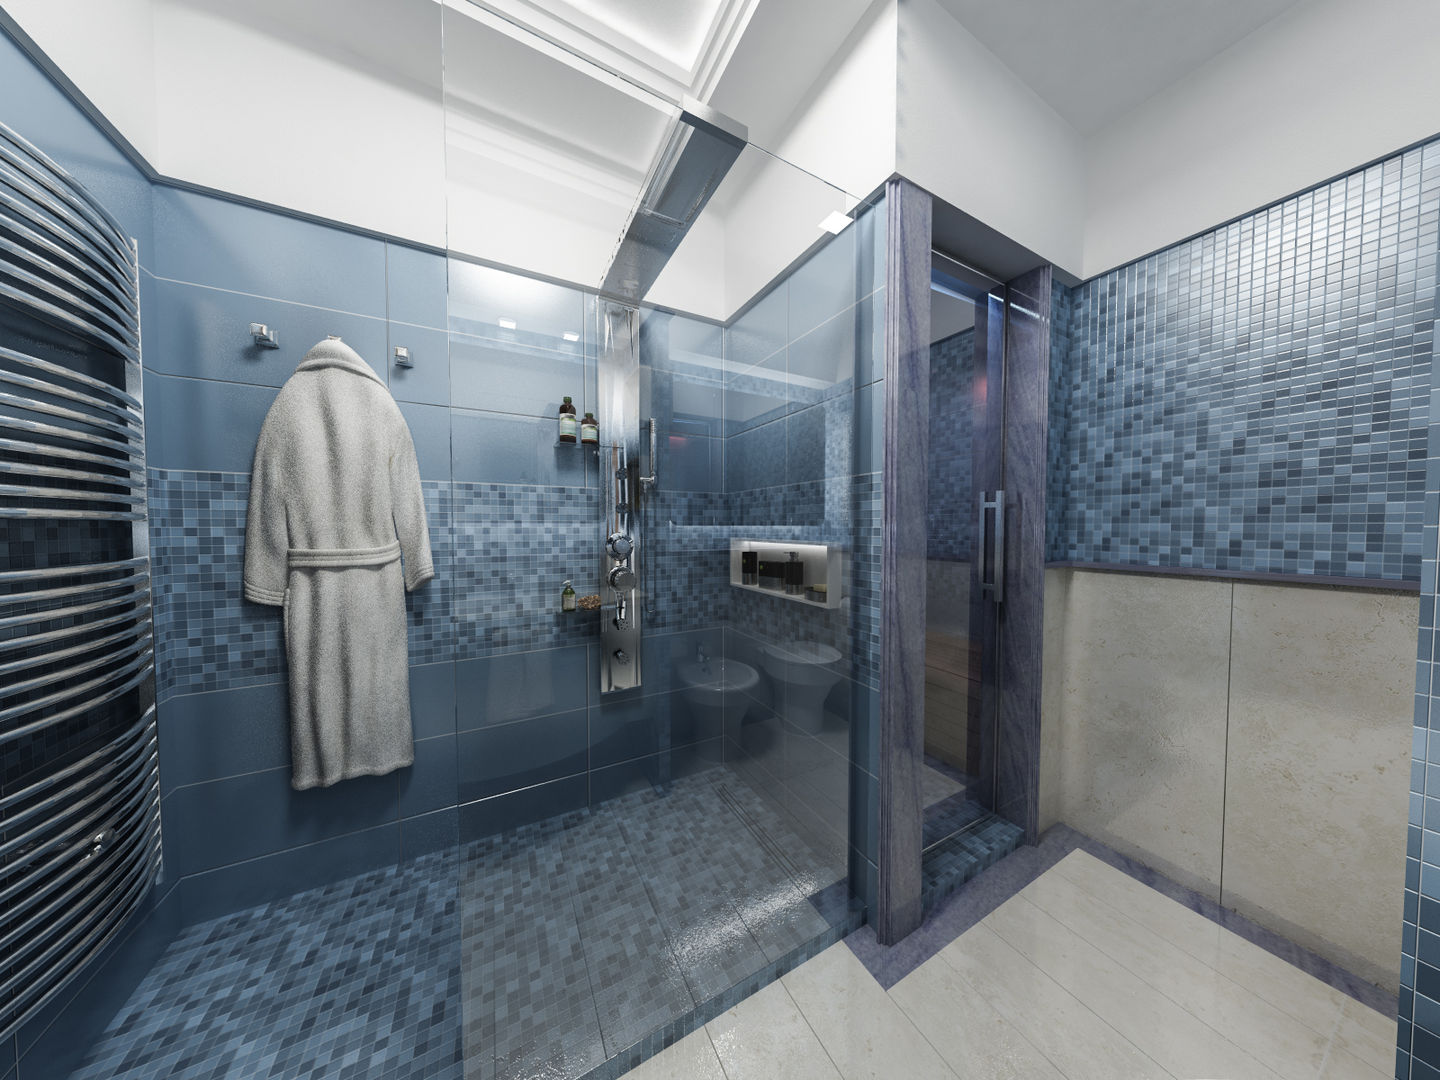 Progetti di Ristrutturazione di Bagni Privati, studiosagitair studiosagitair Bagno moderno doccia mosaico,progetto bagno